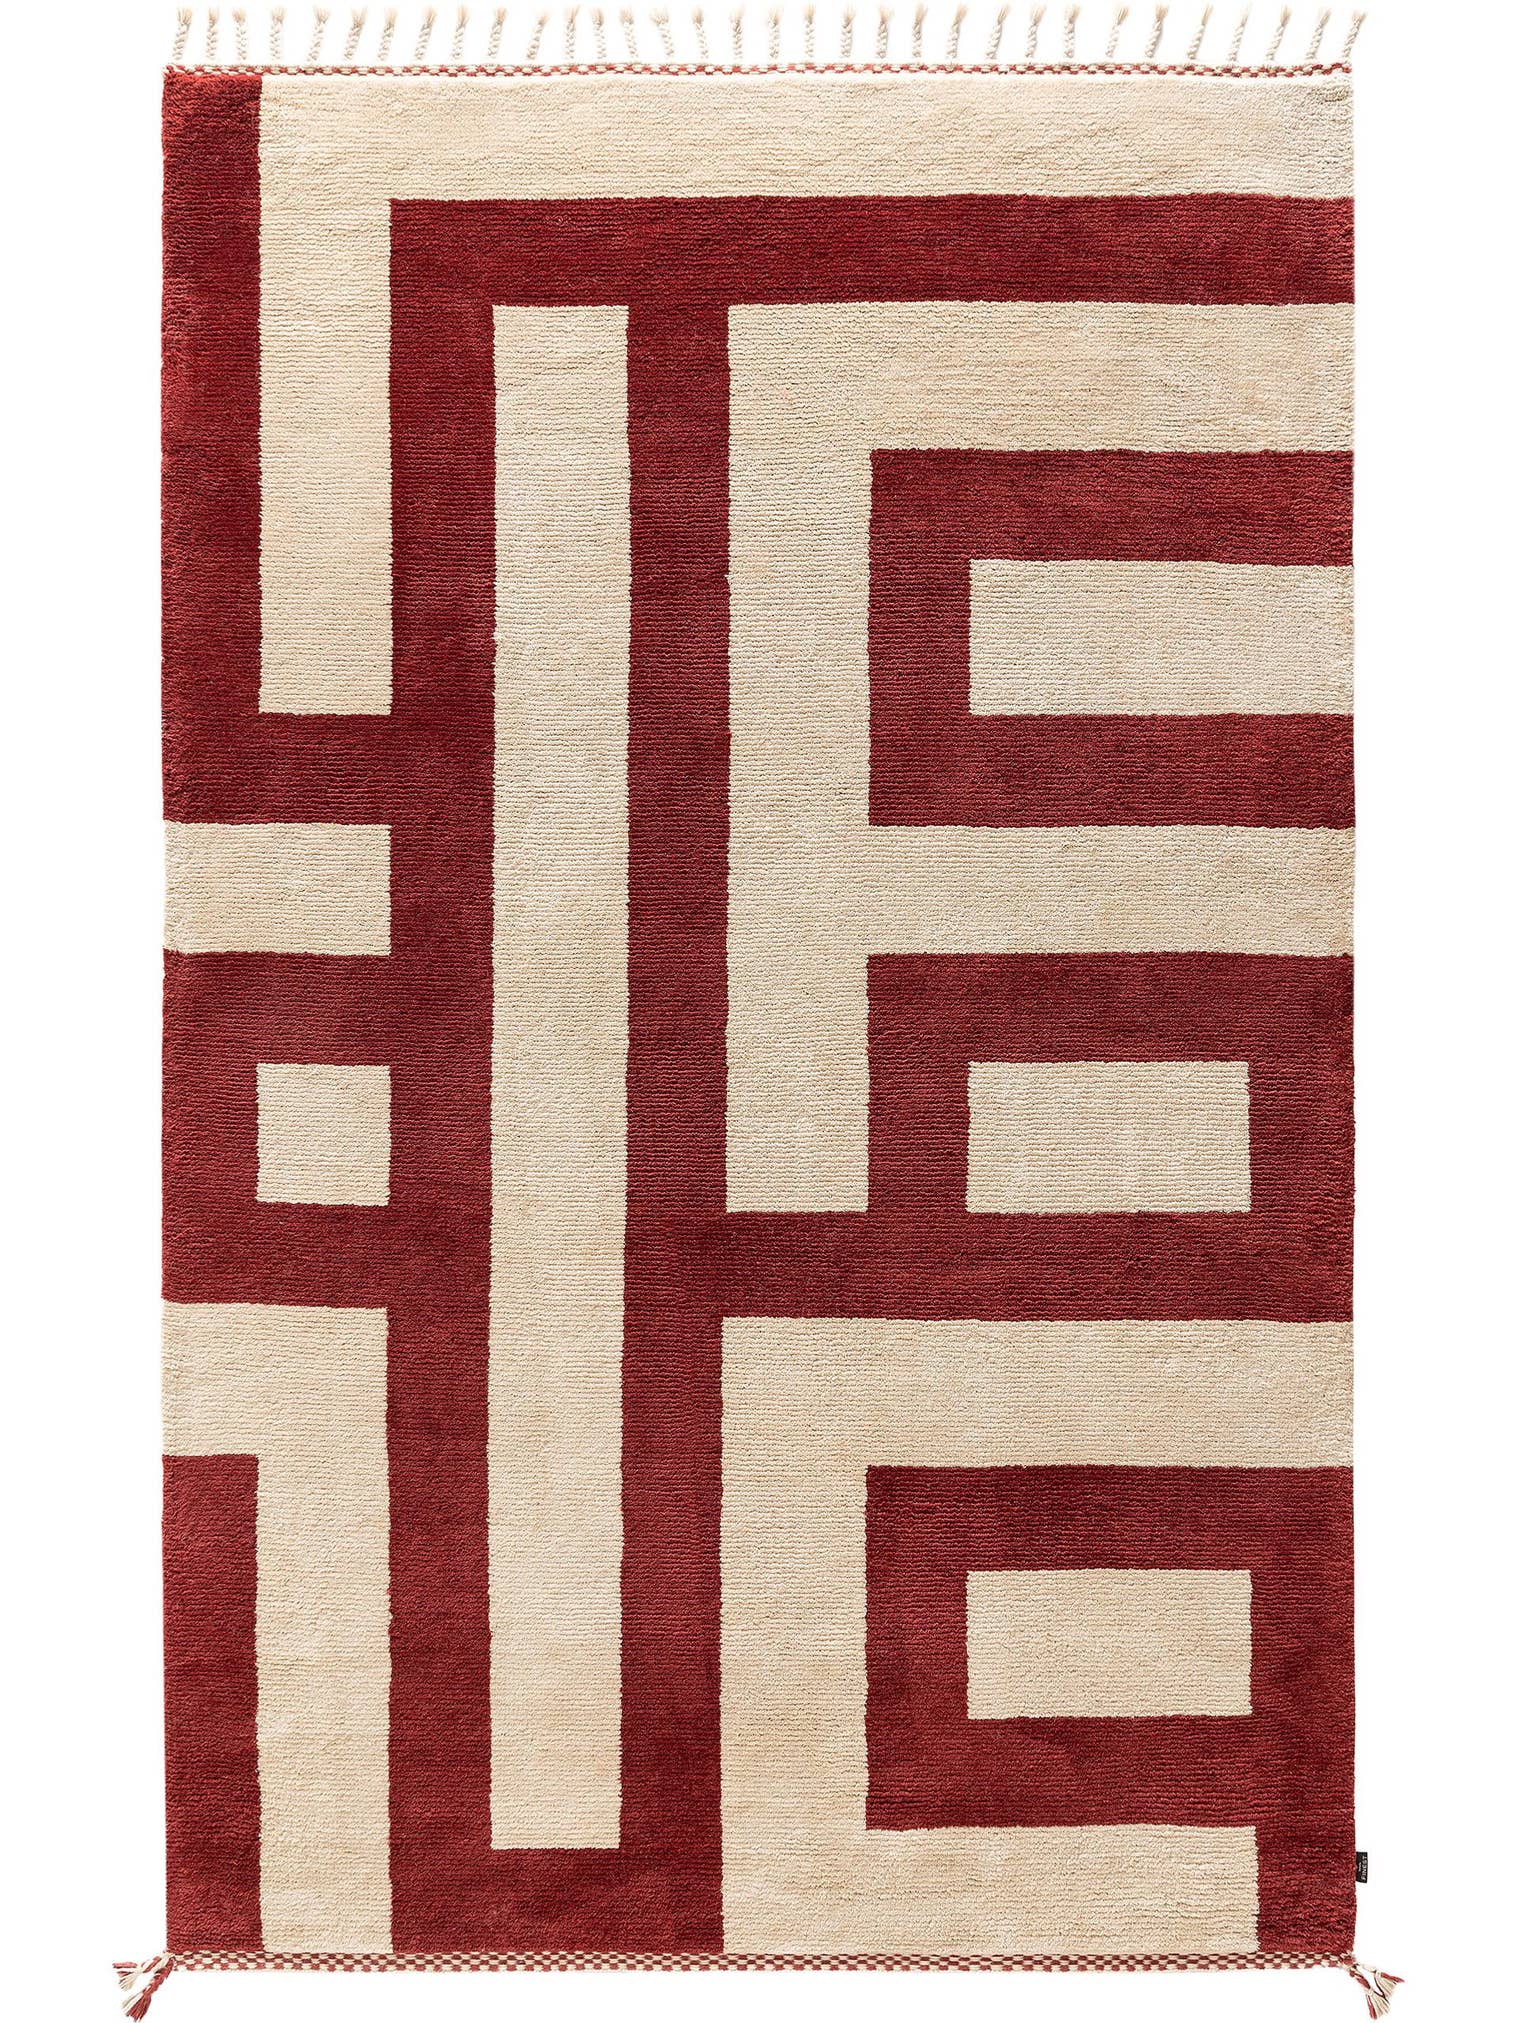 Teppich aus 100% Wolle (aus Neuseeland) in Rot mit 6 bis 10 mm hohem Flor von benuta Finest